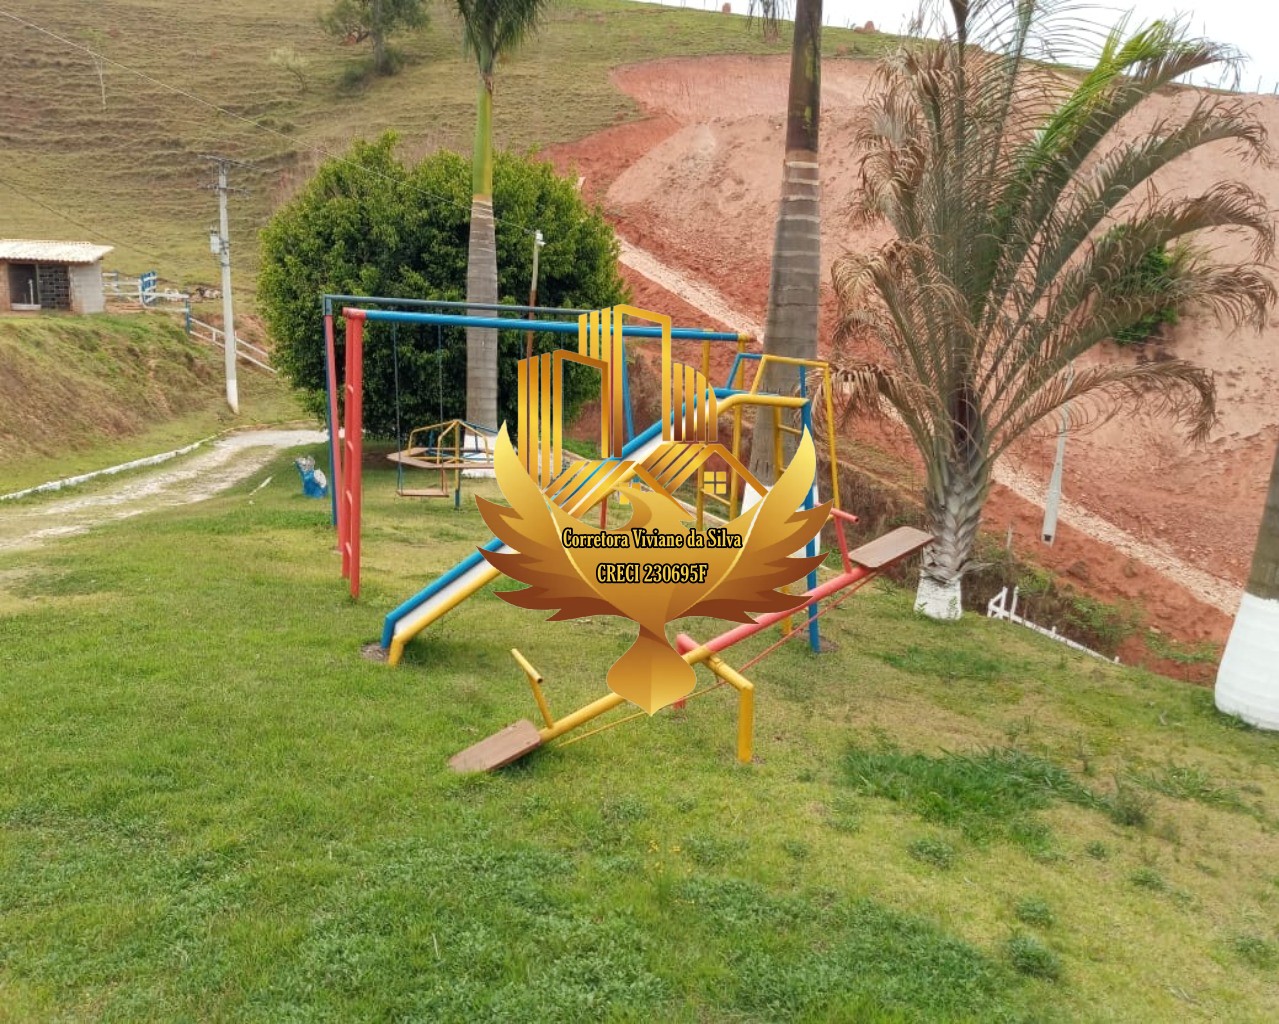 Sítio de 6.500 m² em São Luiz do Paraitinga, SP